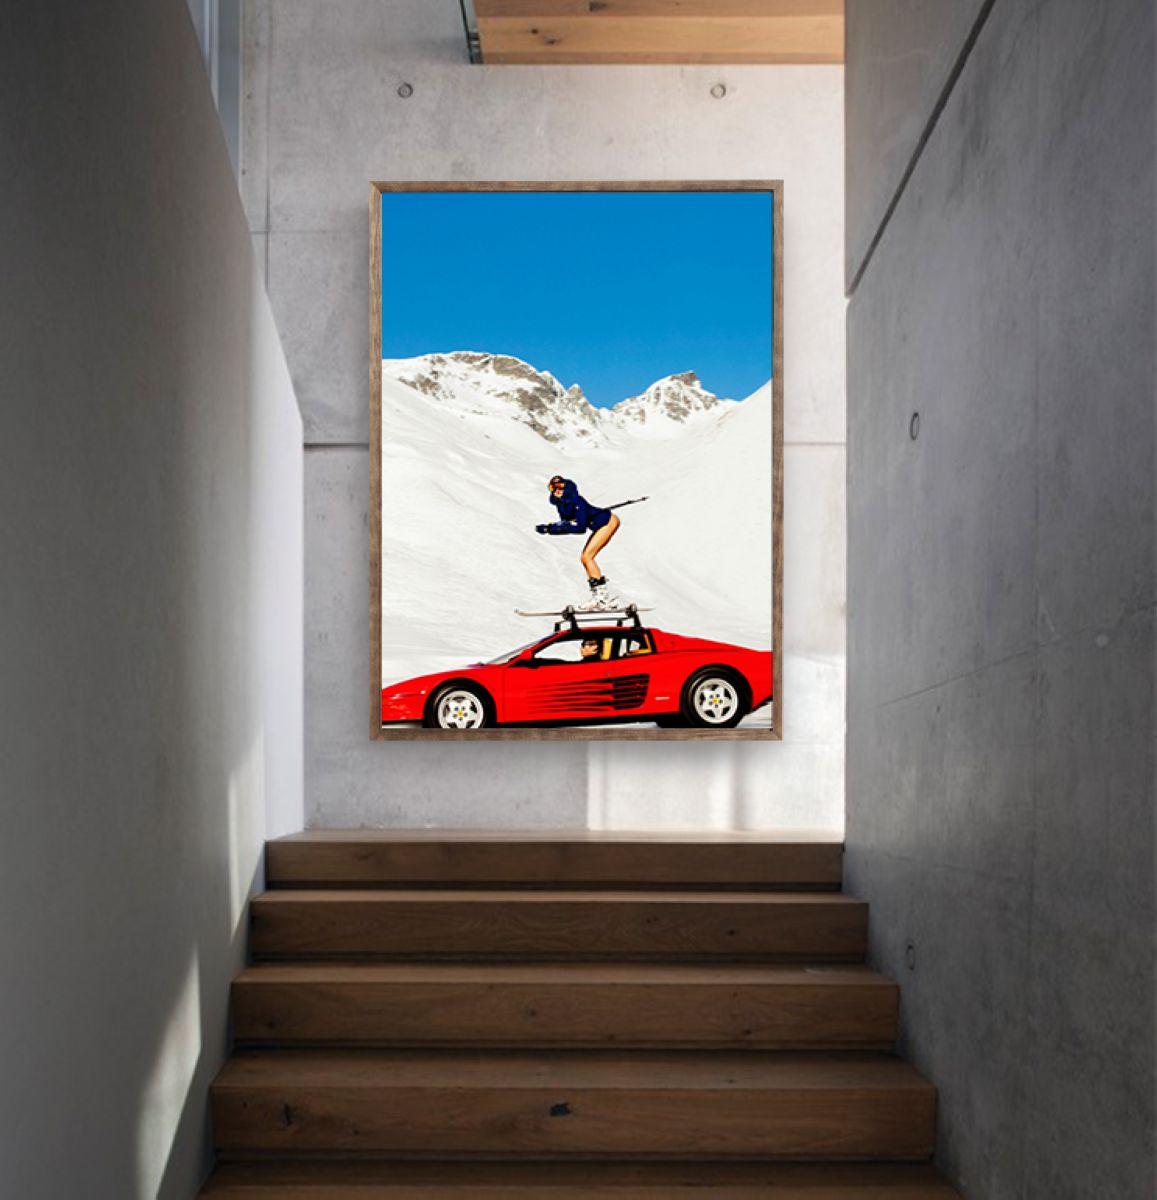 Off-Piste-Modell auf Skiern auf einem Auto in den Schneegräsern – Photograph von Tony Kelly